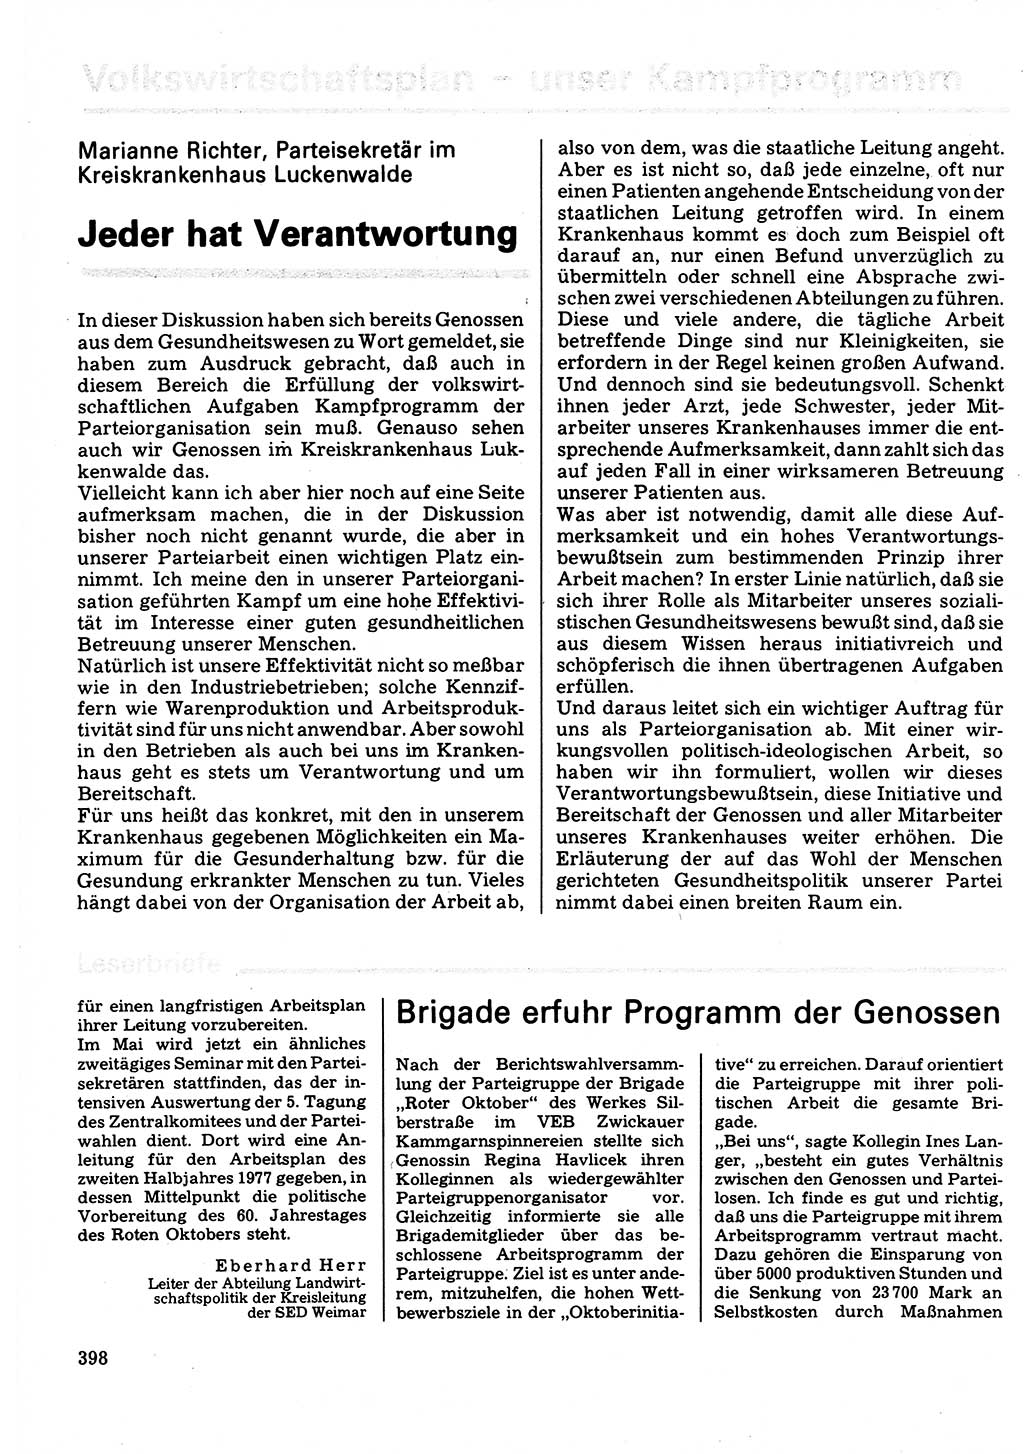 Neuer Weg (NW), Organ des Zentralkomitees (ZK) der SED (Sozialistische Einheitspartei Deutschlands) für Fragen des Parteilebens, 32. Jahrgang [Deutsche Demokratische Republik (DDR)] 1977, Seite 398 (NW ZK SED DDR 1977, S. 398)